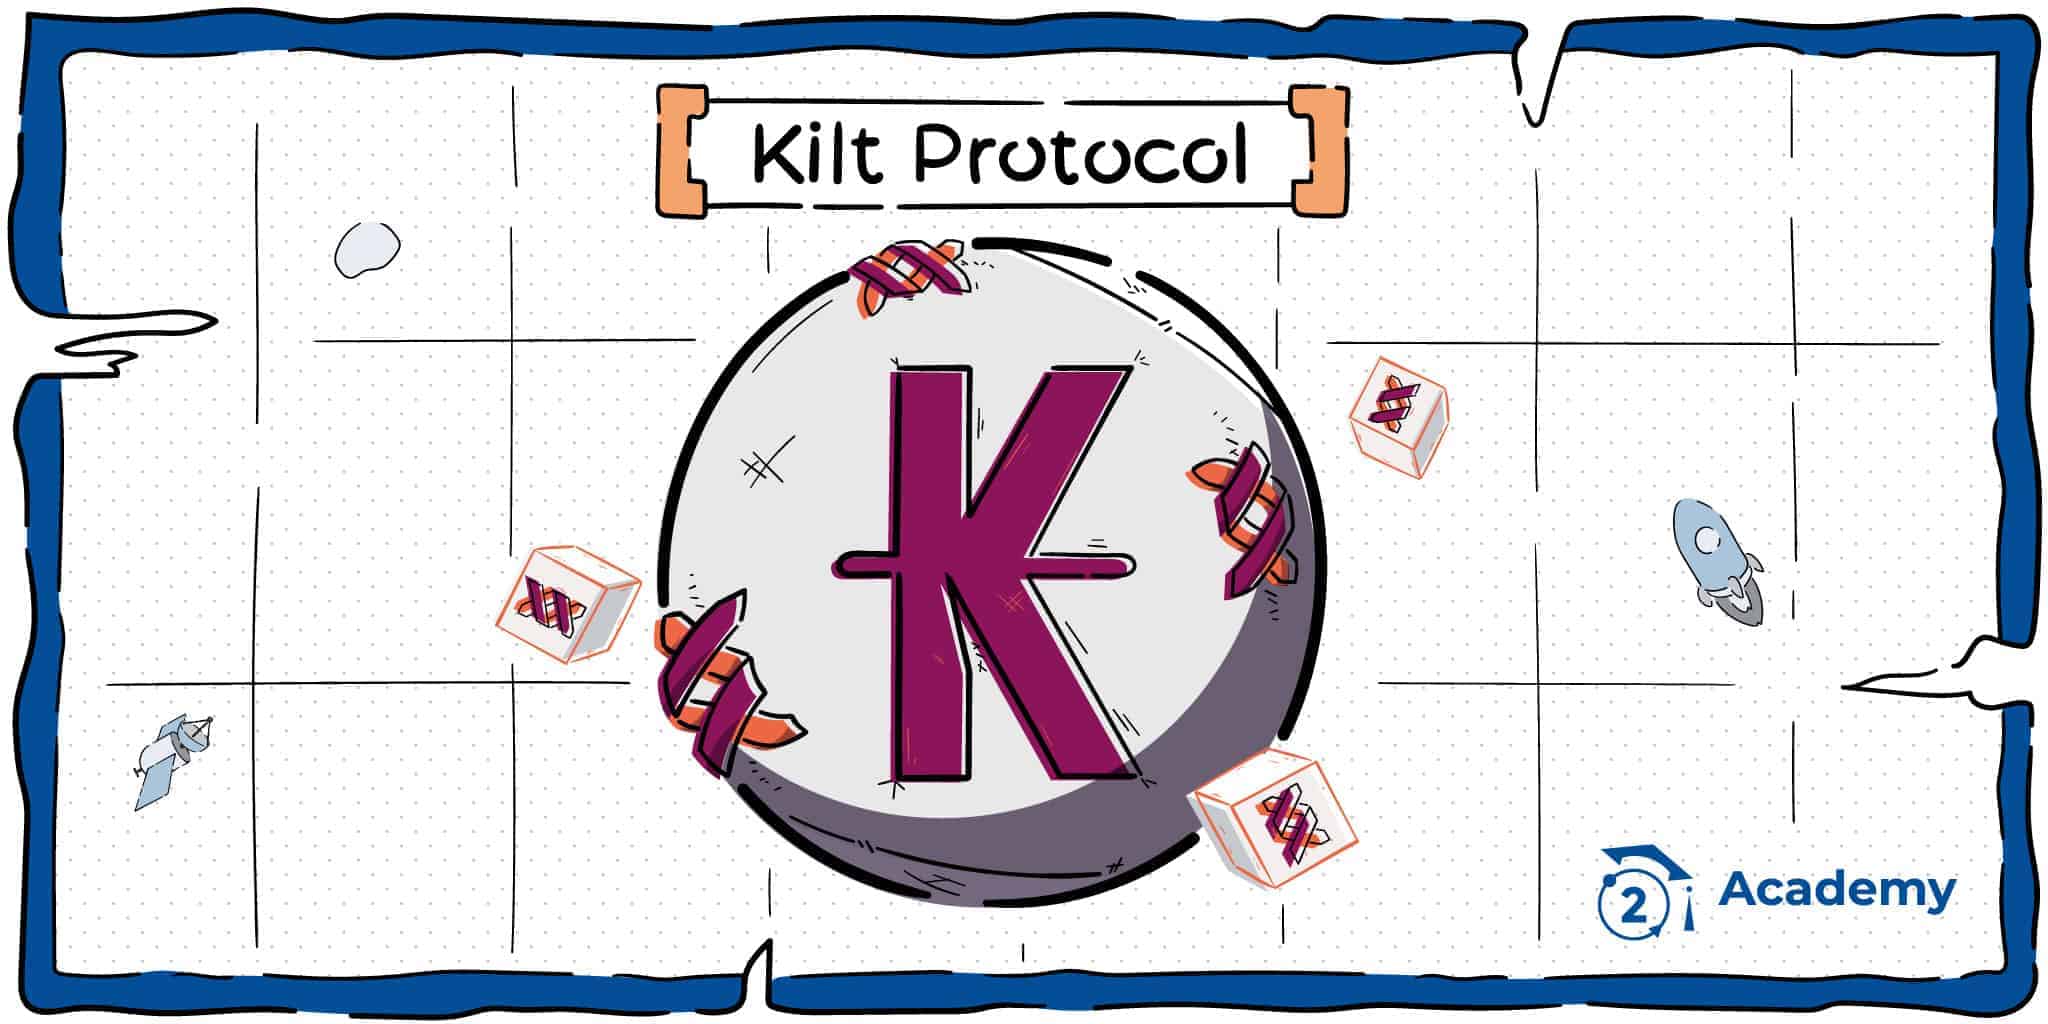 kilt-protocol-bit2meacademy